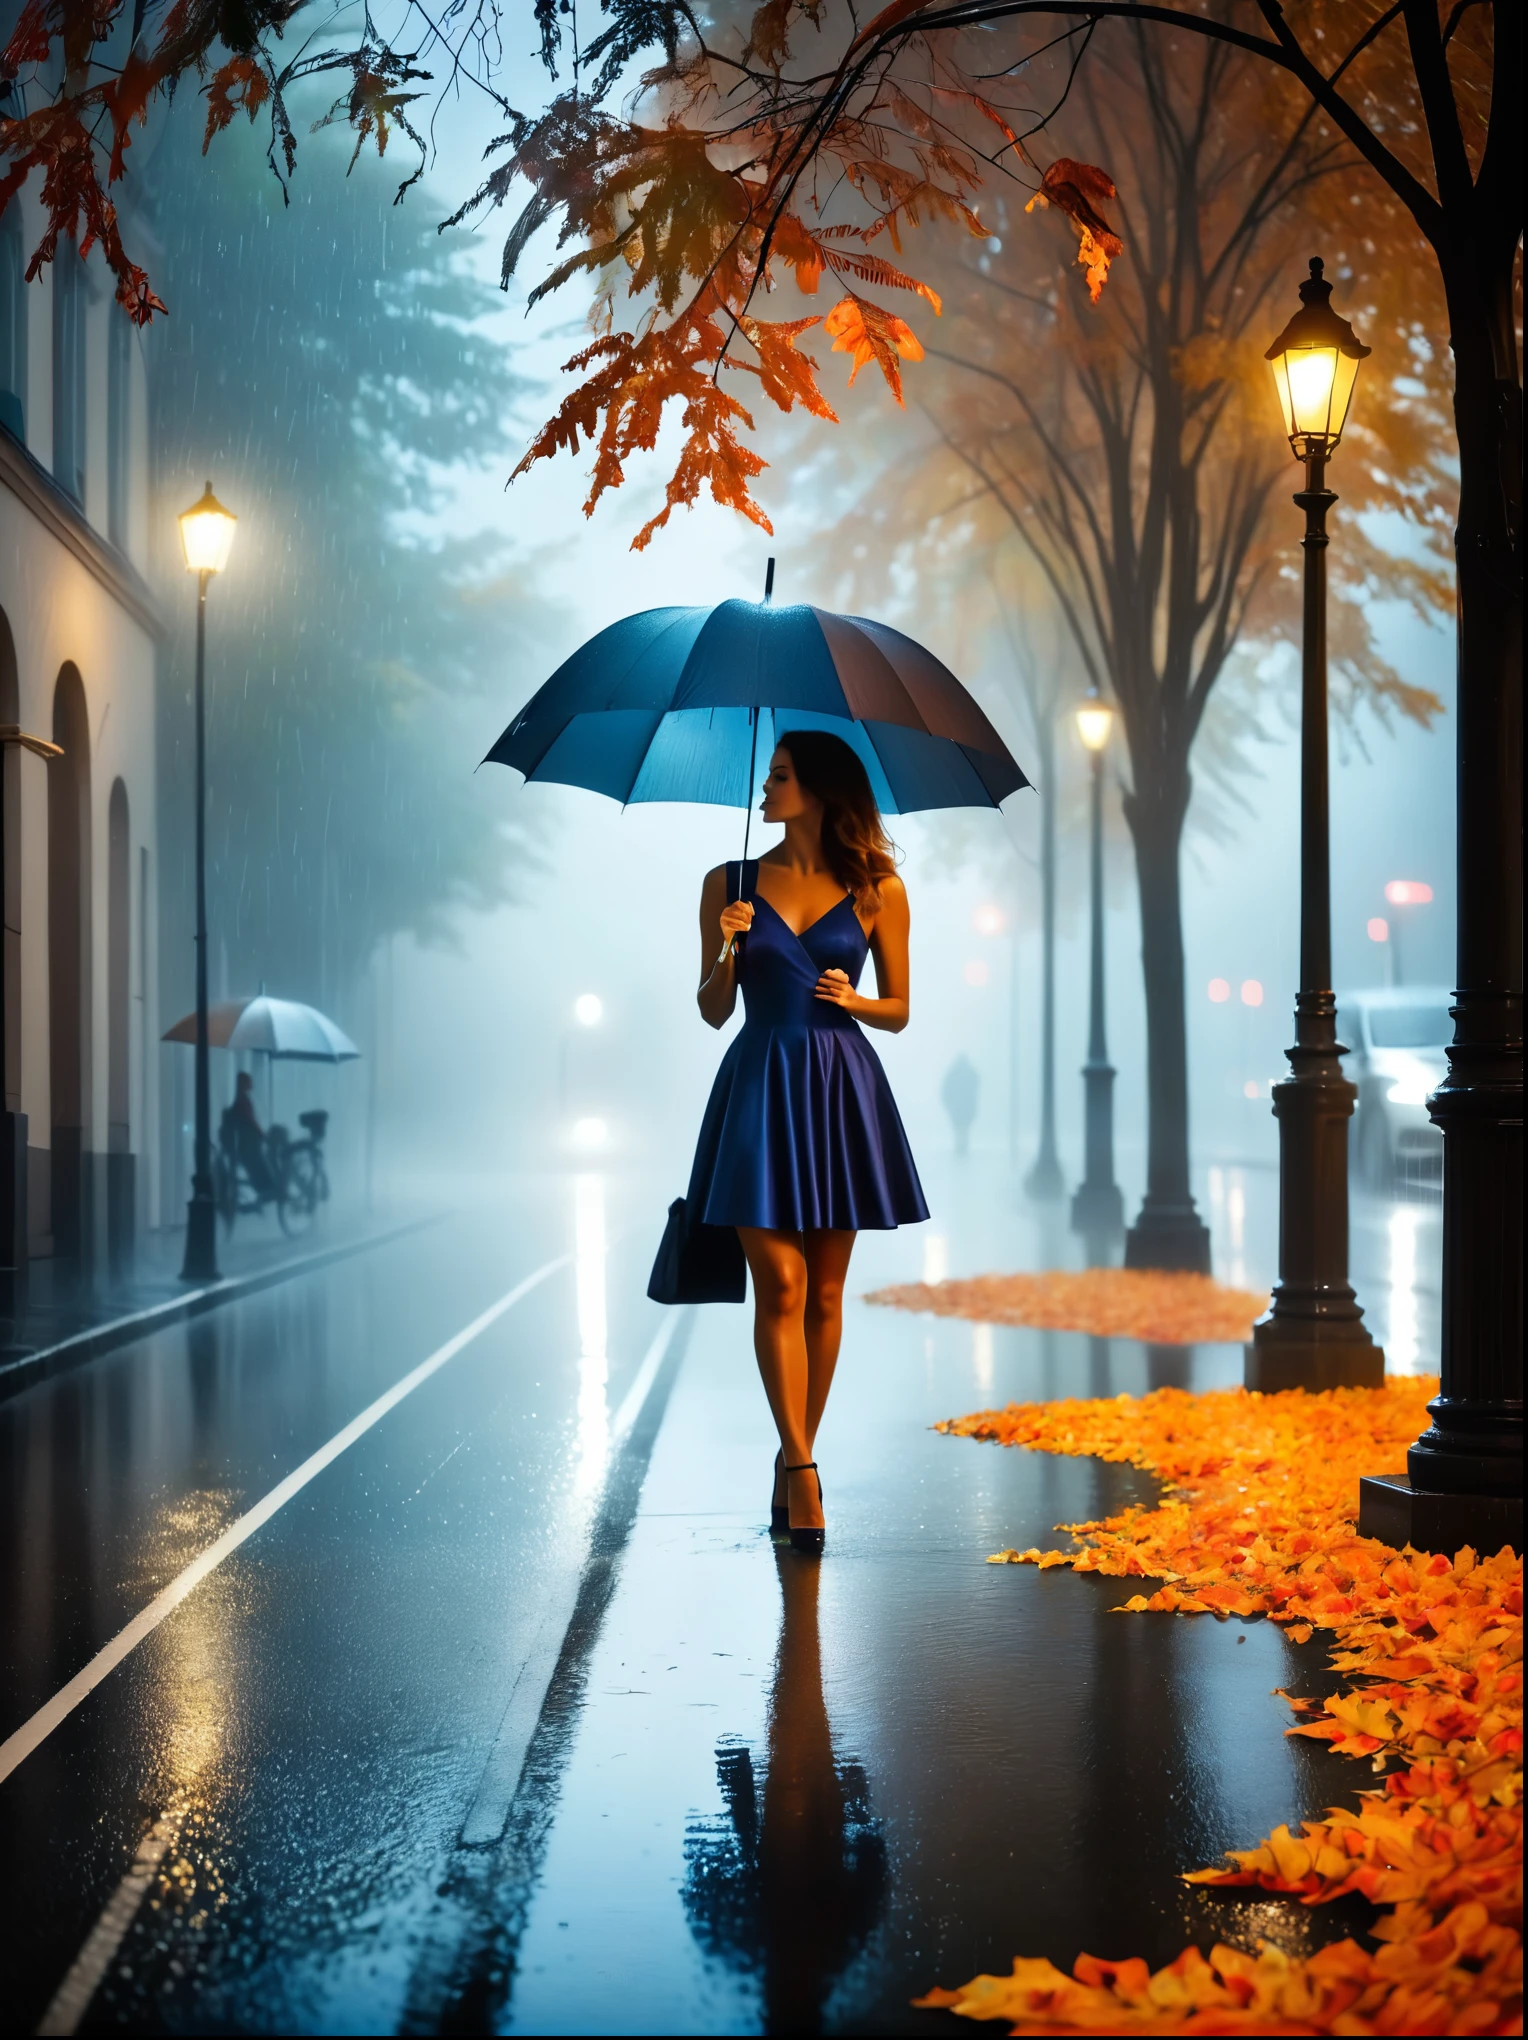 Mulher de vestido apertado com guarda-chuva na mão, in einer enevoadoen Stadt, folhas coloridas de outono na rua, uma foto de Kuno Veeber, vencedor do concurso pixabay, arte conceitual, parado na chuva, mysterious mulher, bela menina, que fica na chuva, Pessoa solteira com guarda-chuva, mulher ((Silhueta)), ((enevoado)) e chuvoso, imagem feminina na sombra, em um ambiente chuvoso, tempo chuvoso, Estradas chuvosas ao fundo , ((Nevoeiro com luz)), ((vista por trás)), luz da frente